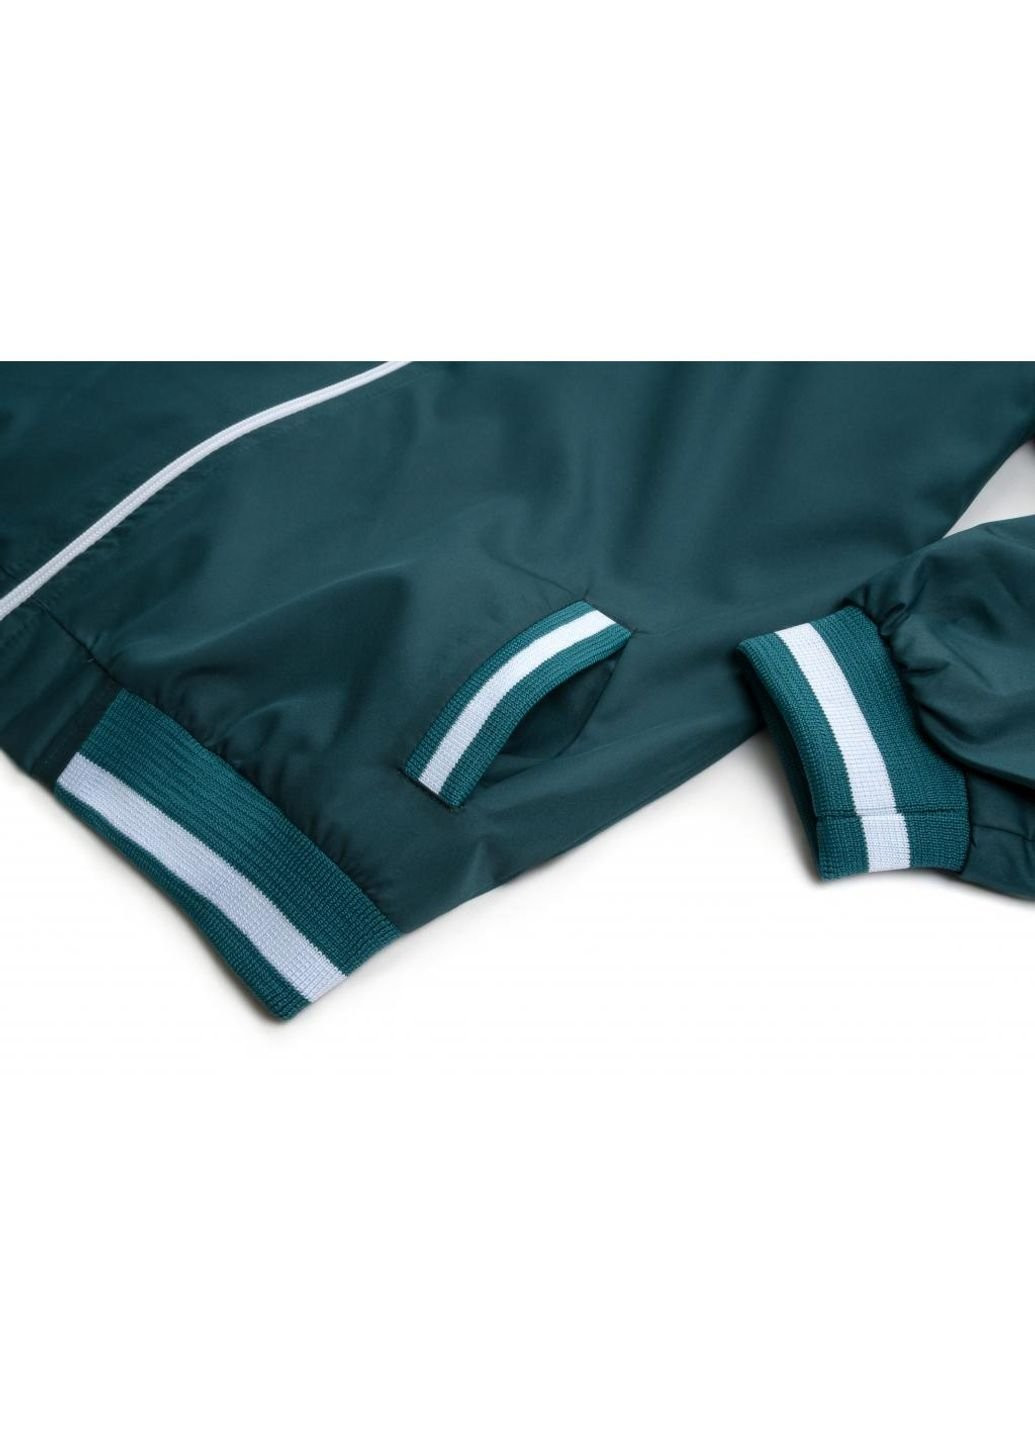 Белая демисезонная куртка ветровка с манжетами (7910-134b-green) Haknur